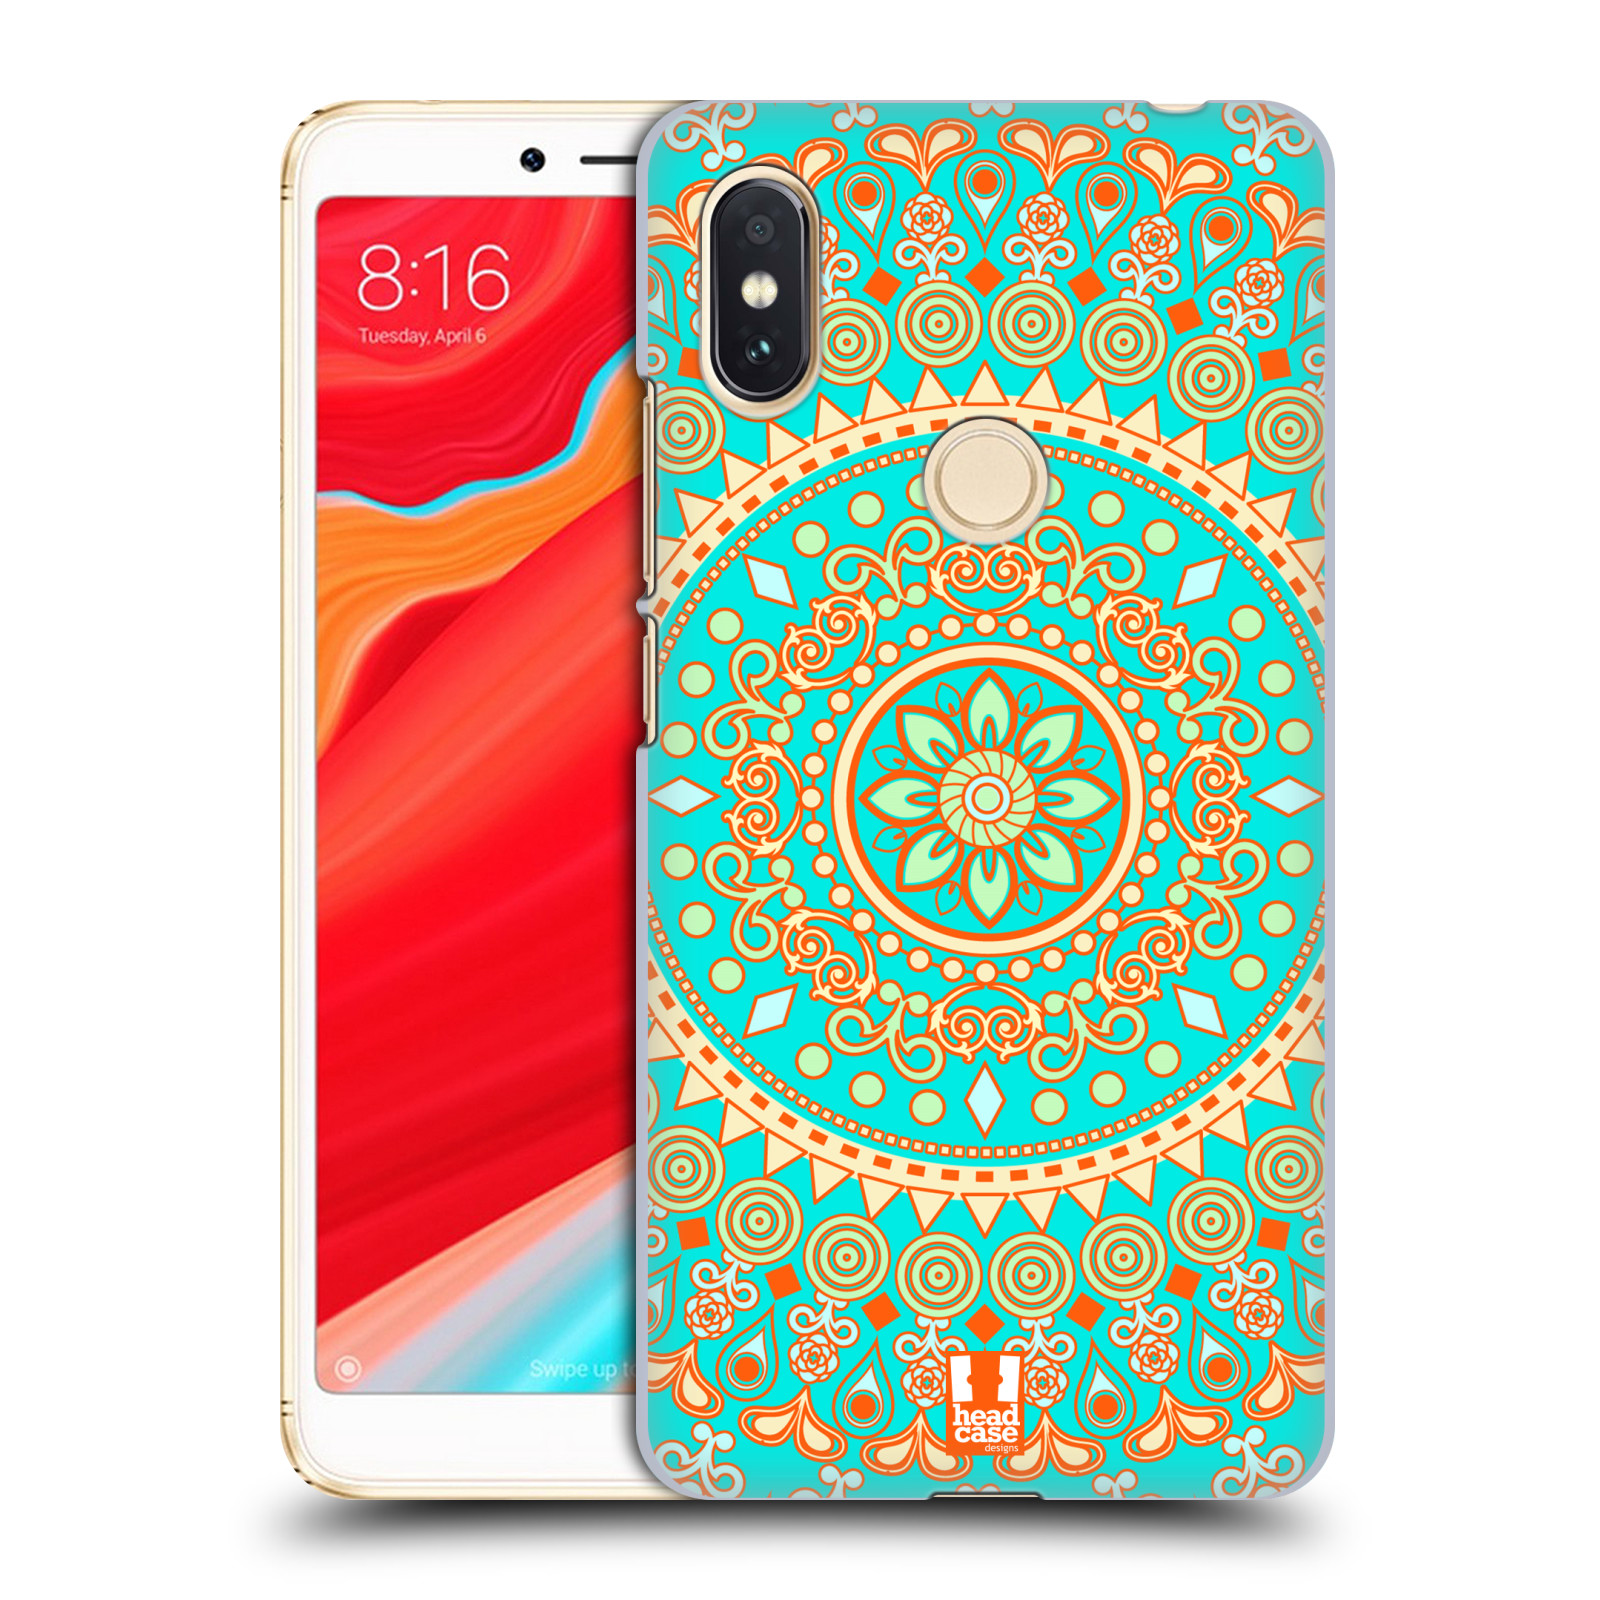 HEAD CASE plastový obal na mobil Xiaomi Redmi S2 vzor Indie Mandala slunce barevný motiv TYRKYSOVÁ, ZELENÁ